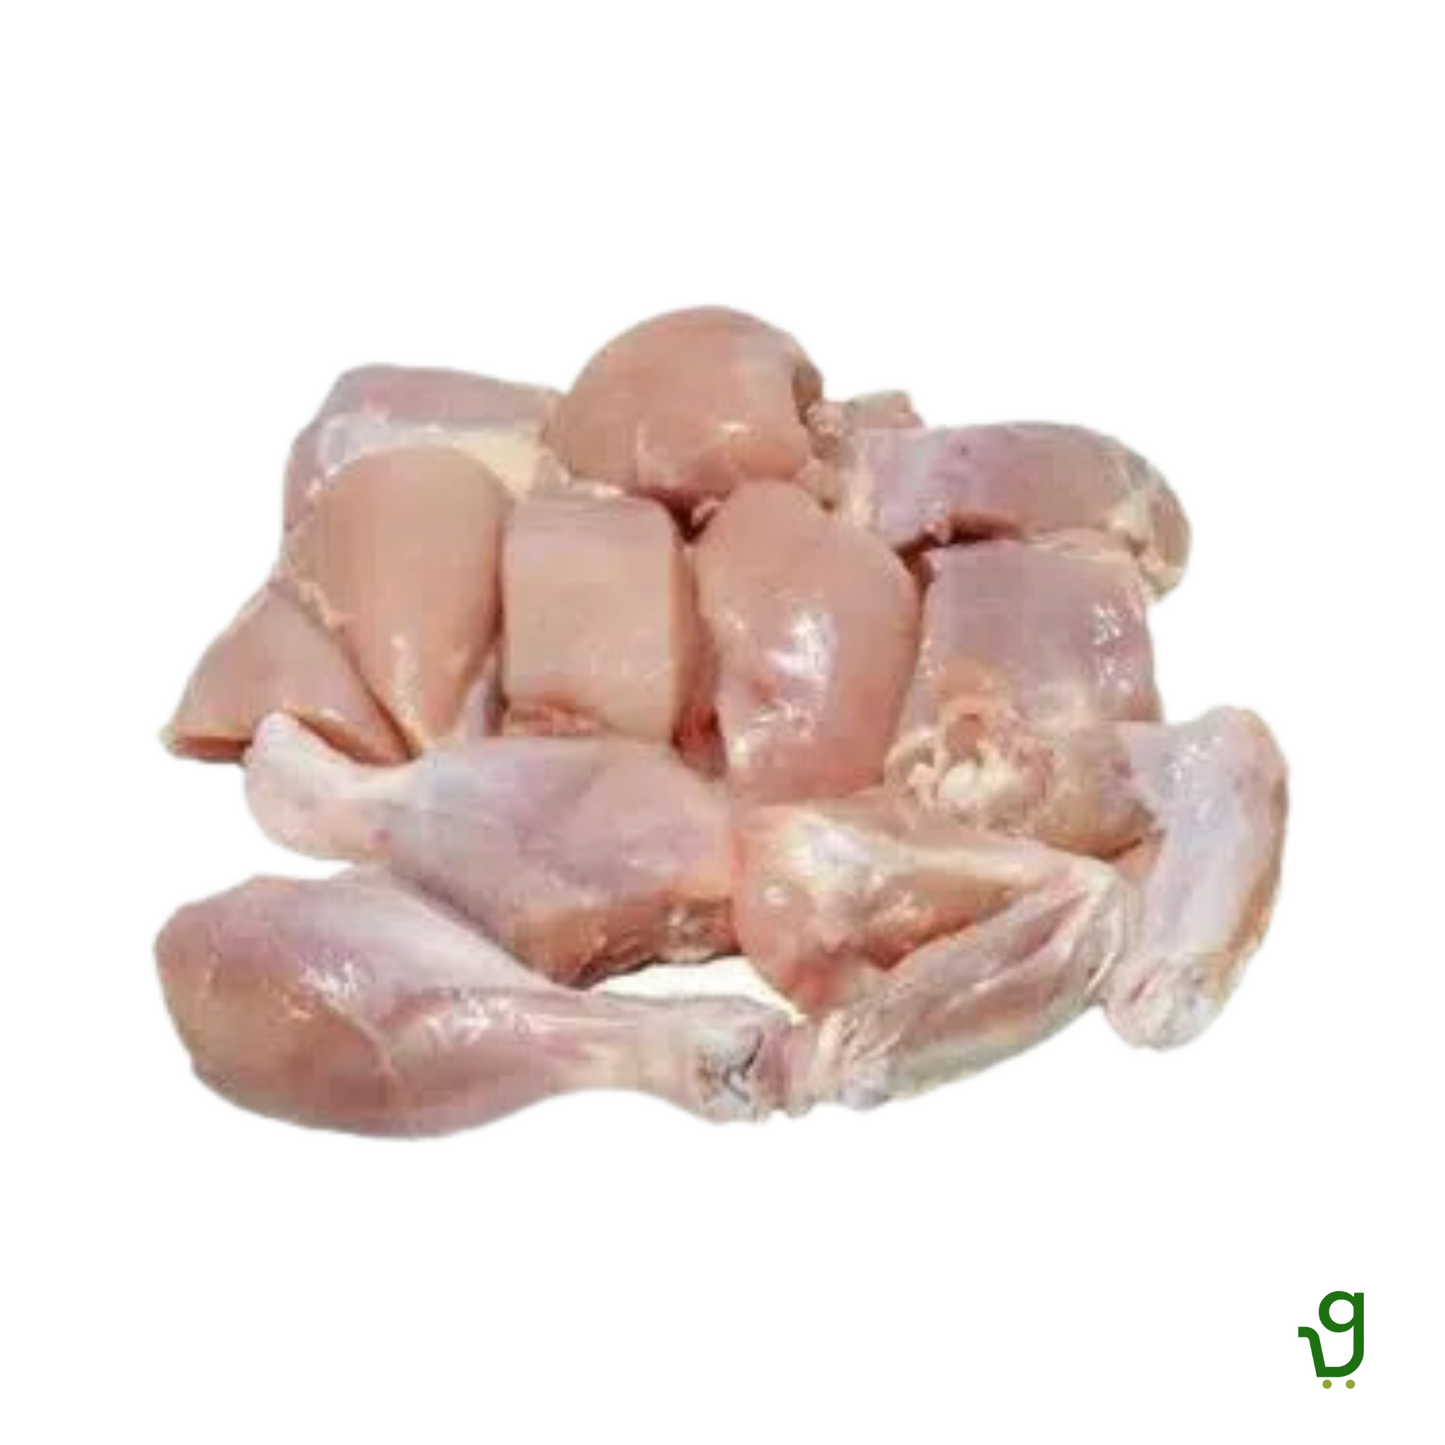 Chicken Biryani Pieces (500g)